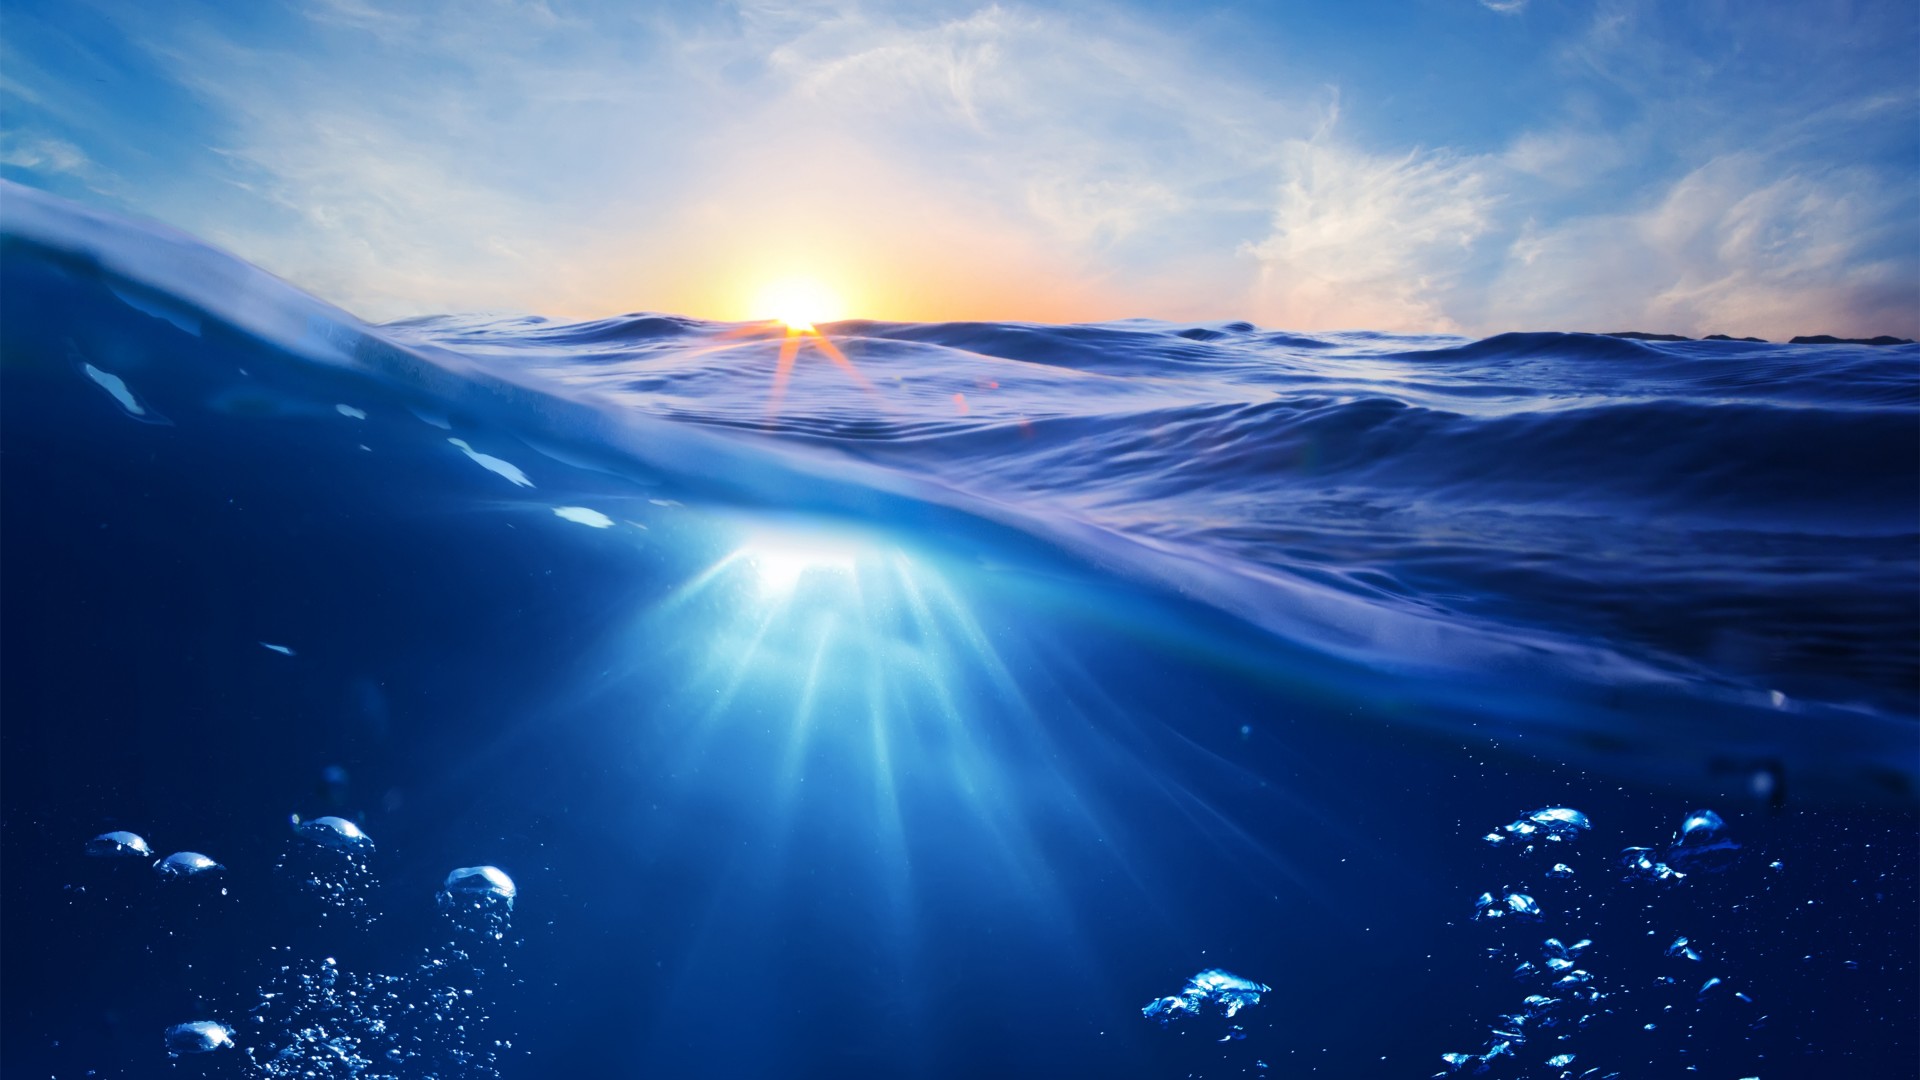 океан, 5k, 4k, 8k, море, вода, подводная, под водой, подводный, облака, солнце, синий, лучи, Ocean, 5k, 4k wallpaper, 8k, Sea, nature, underwater, water, sun, sky, blue, rays (horizontal)